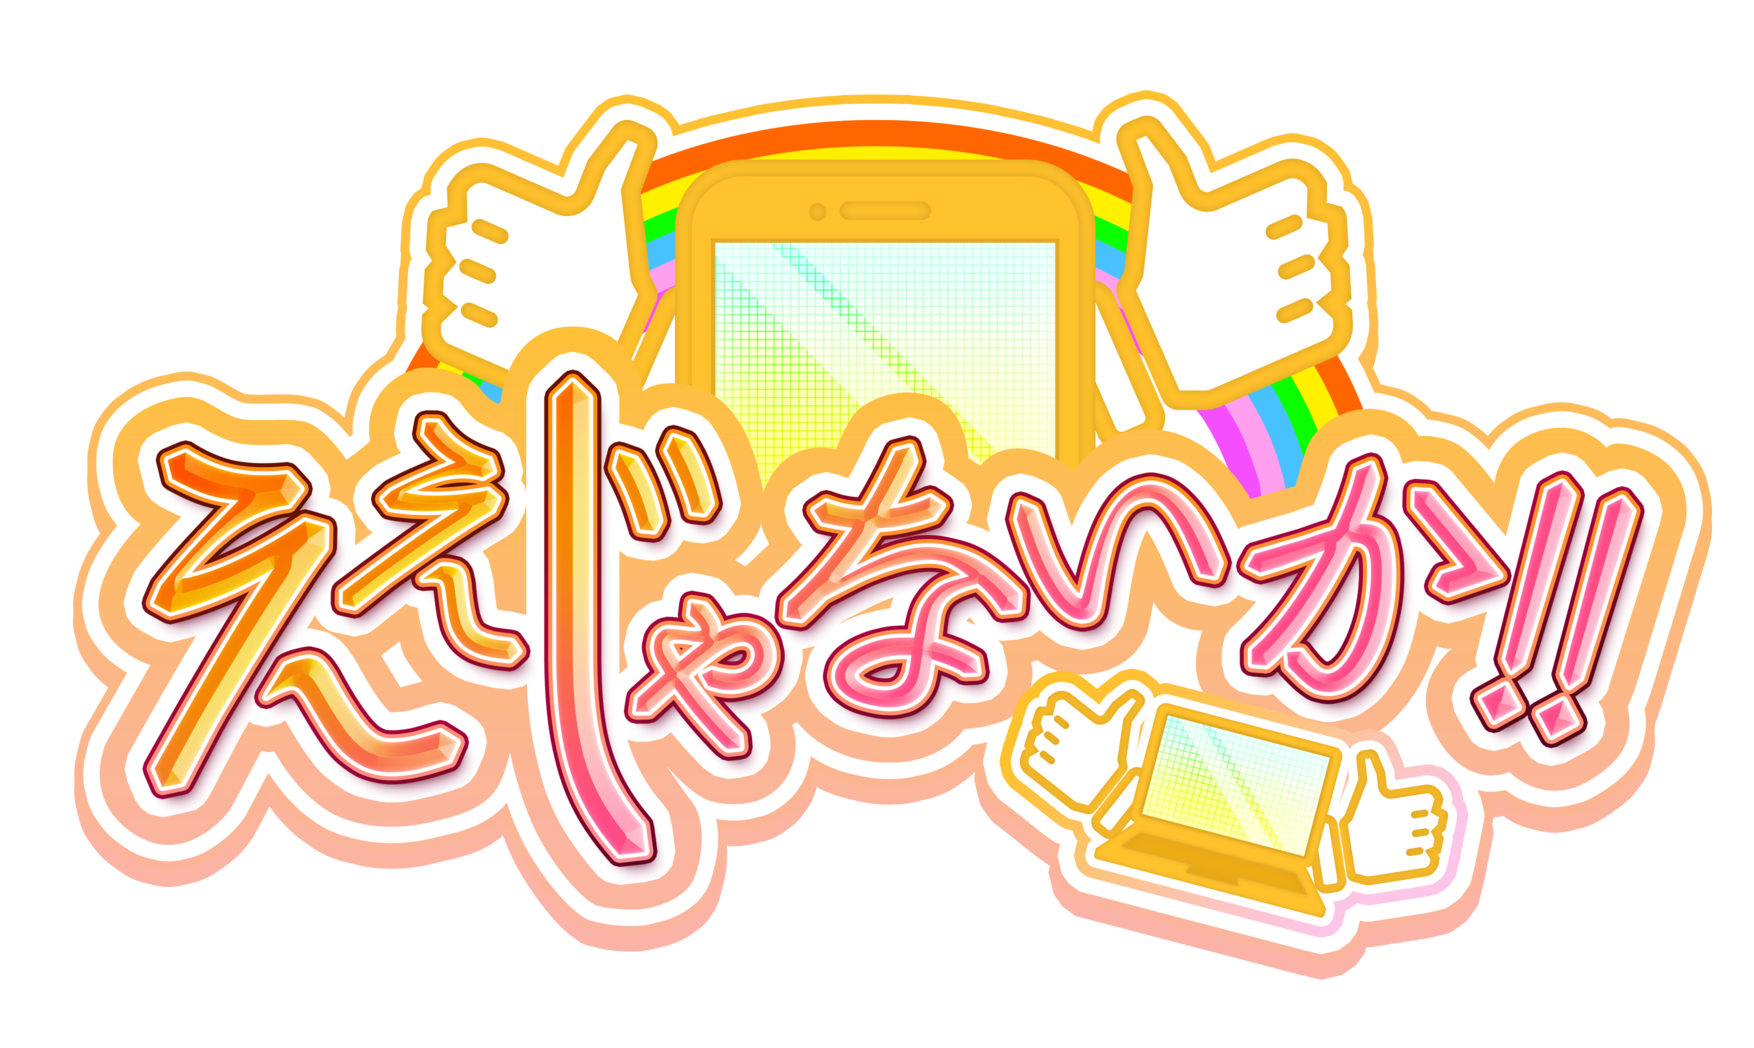 【大反響御礼!】 TOKYO MX放送「ええじゃないか！！」で収納ピットのトランクルームサービスが特集されました！